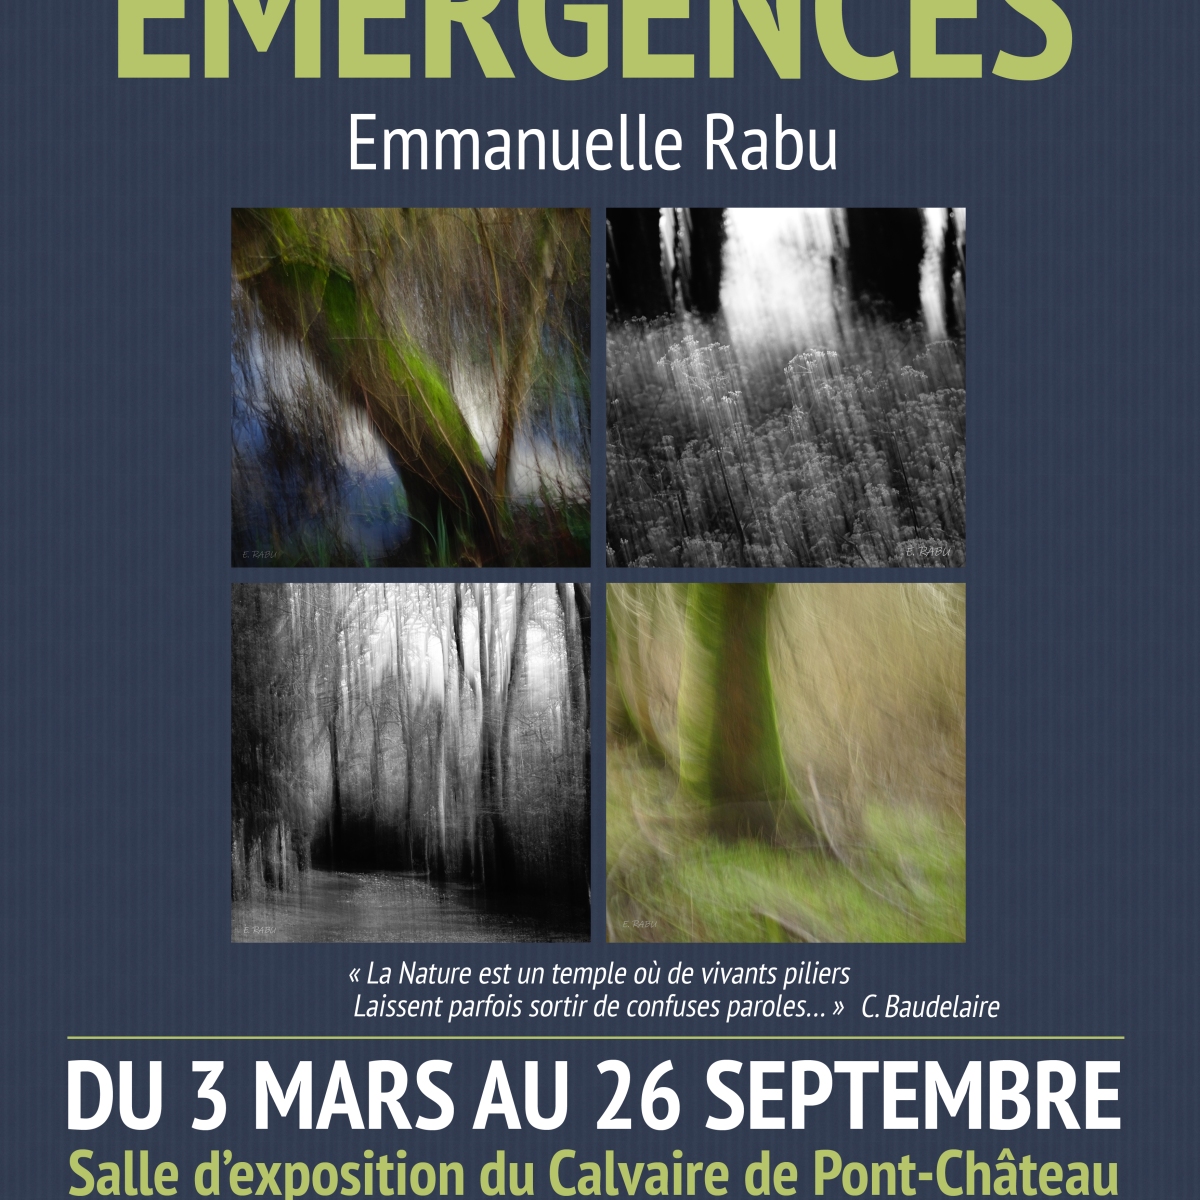 Exposition « Émergences » à Pont-Château